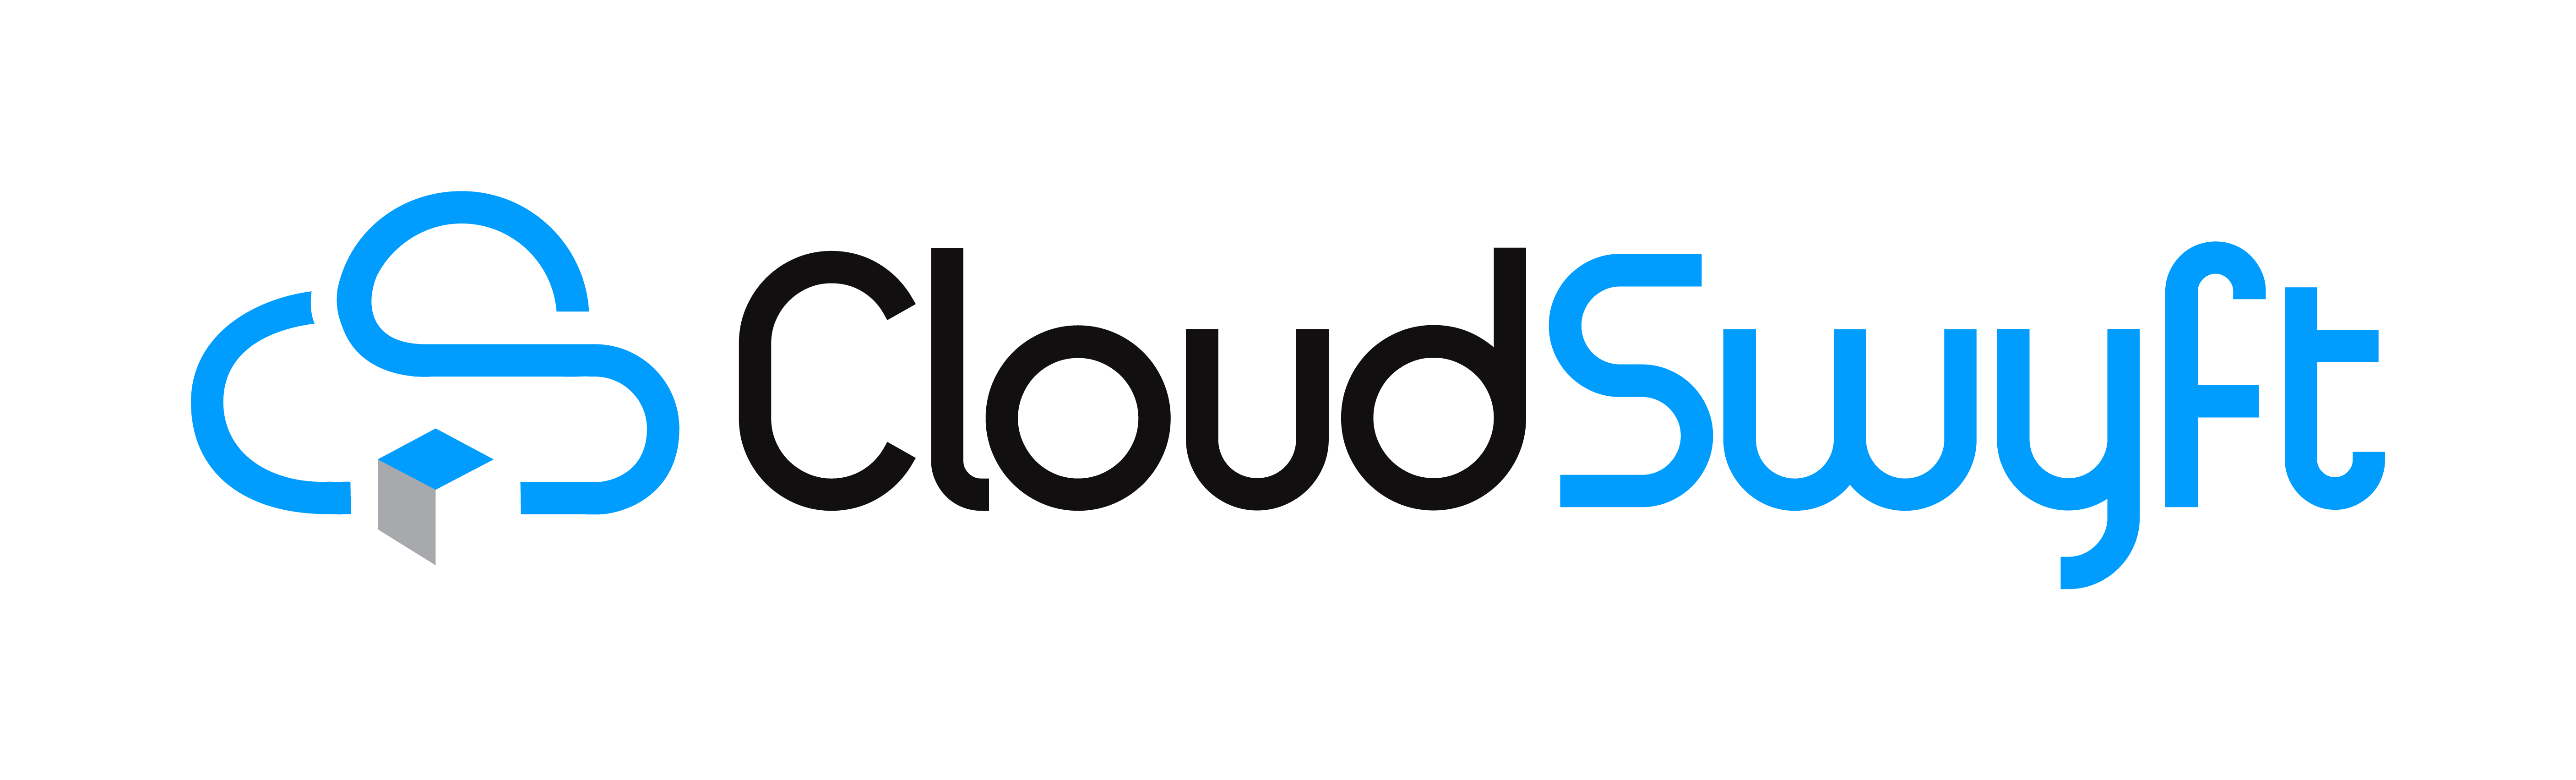 Cloudswyft Logo